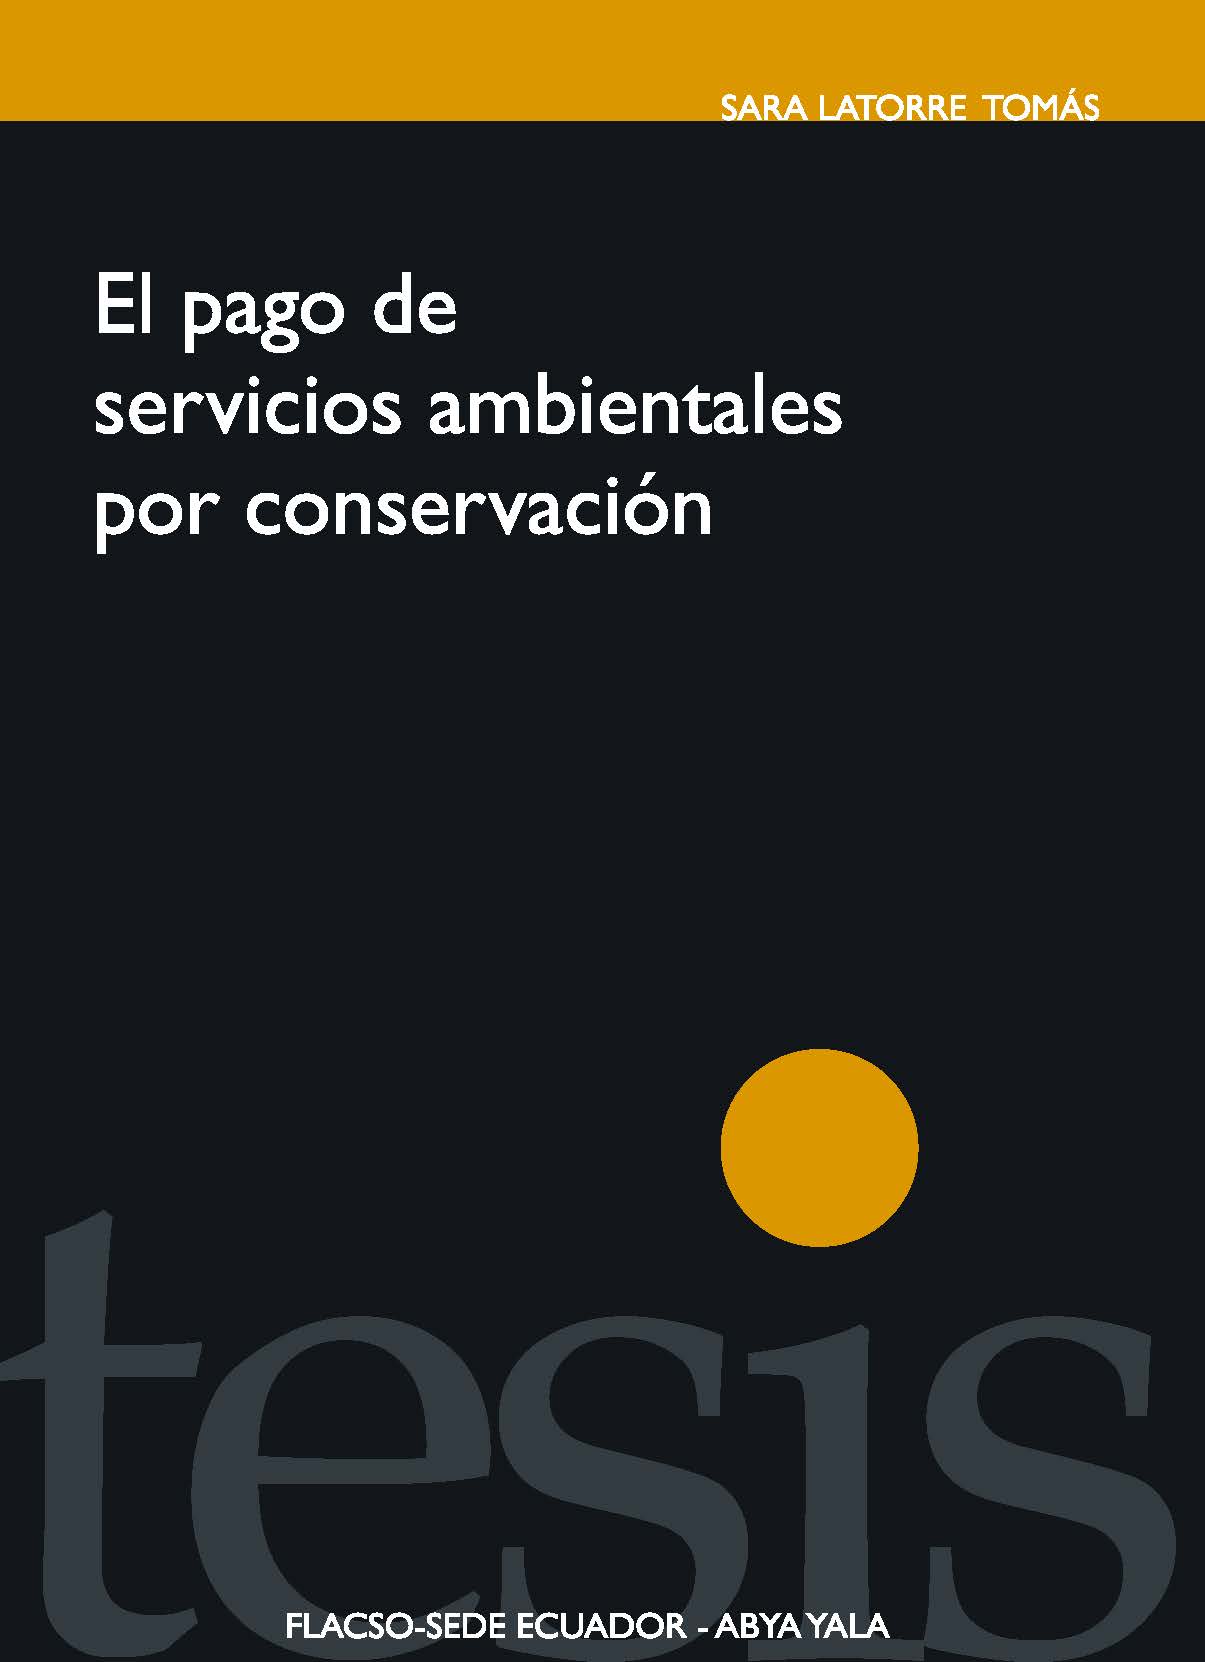 Latorre Tomás, Sara <br>El pago de servicios ambientales por conservación: desarrollo con identidad en la gran Reserva Chachi de Esmeraldas<br/>Quito: FLACSO Ecuador : Abya- Yala. 2011. 150 p. 